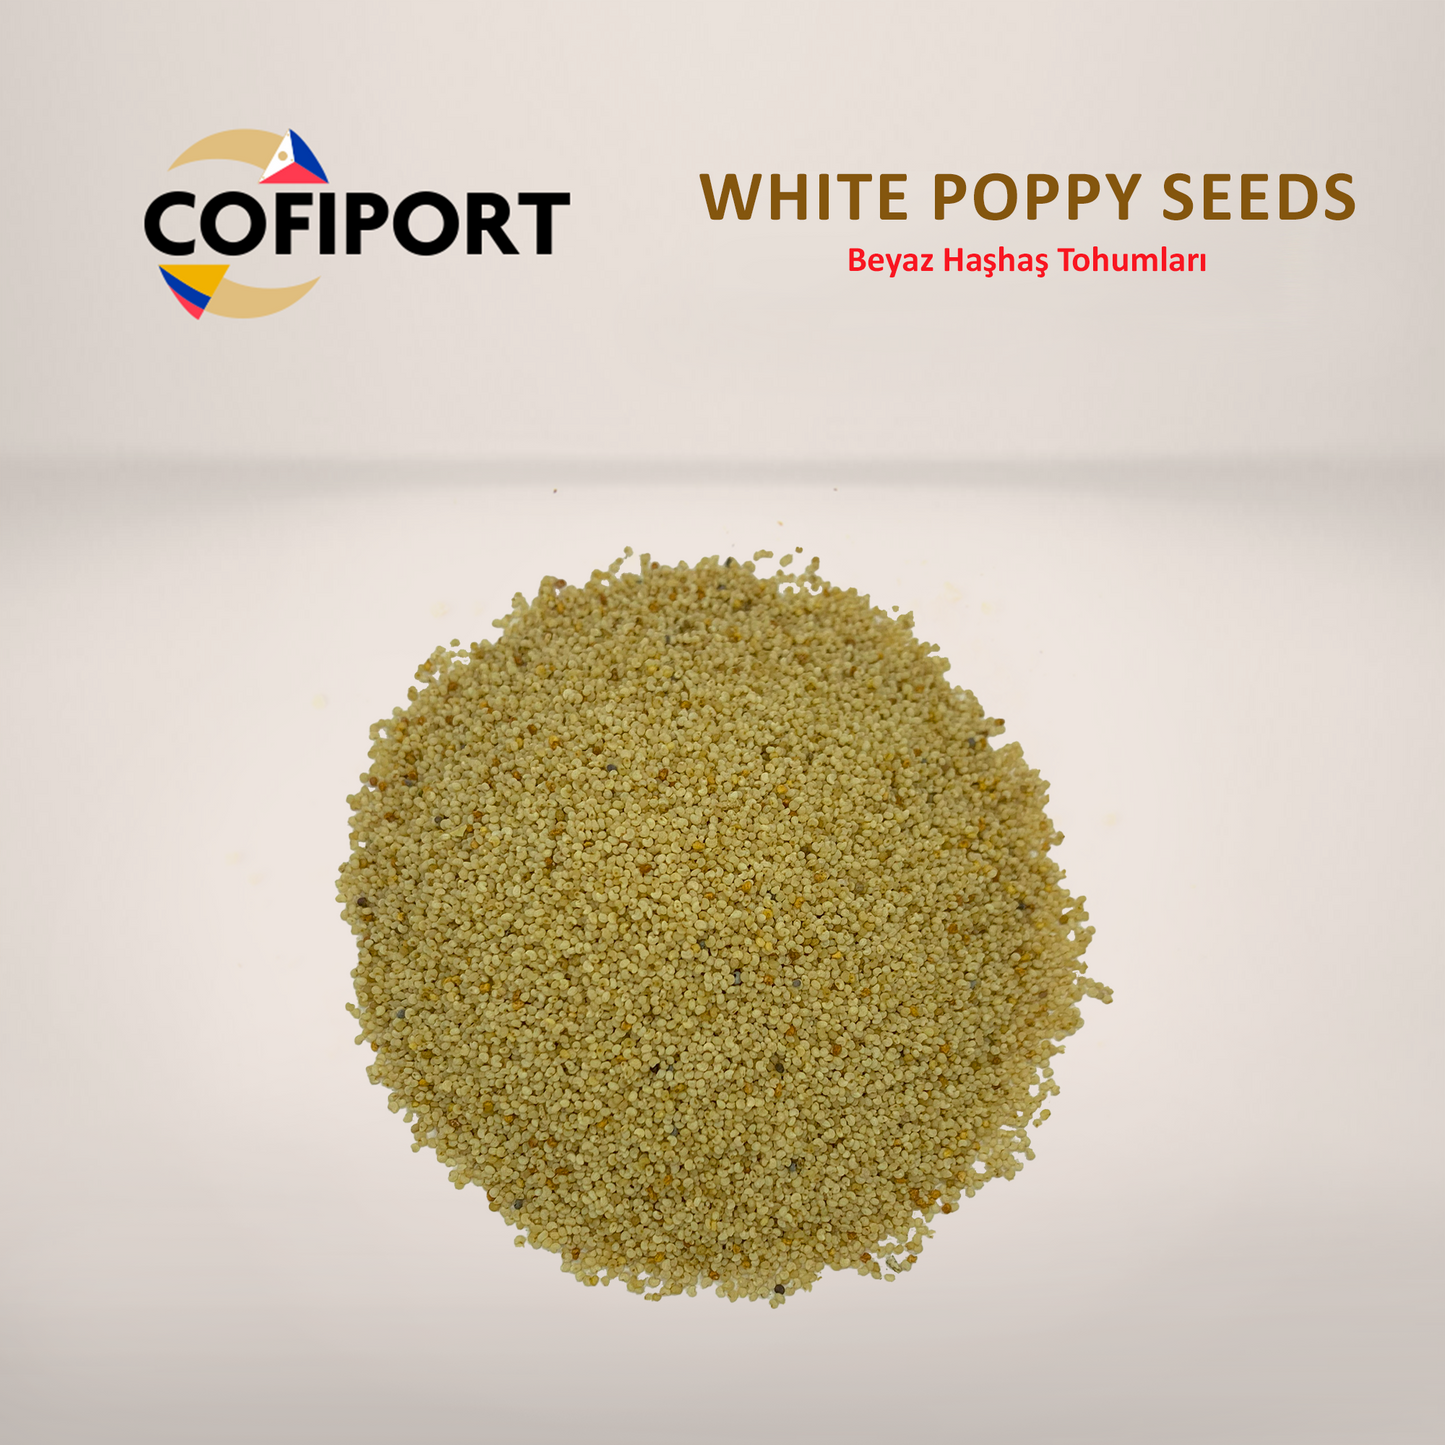 White Poppy Seeds